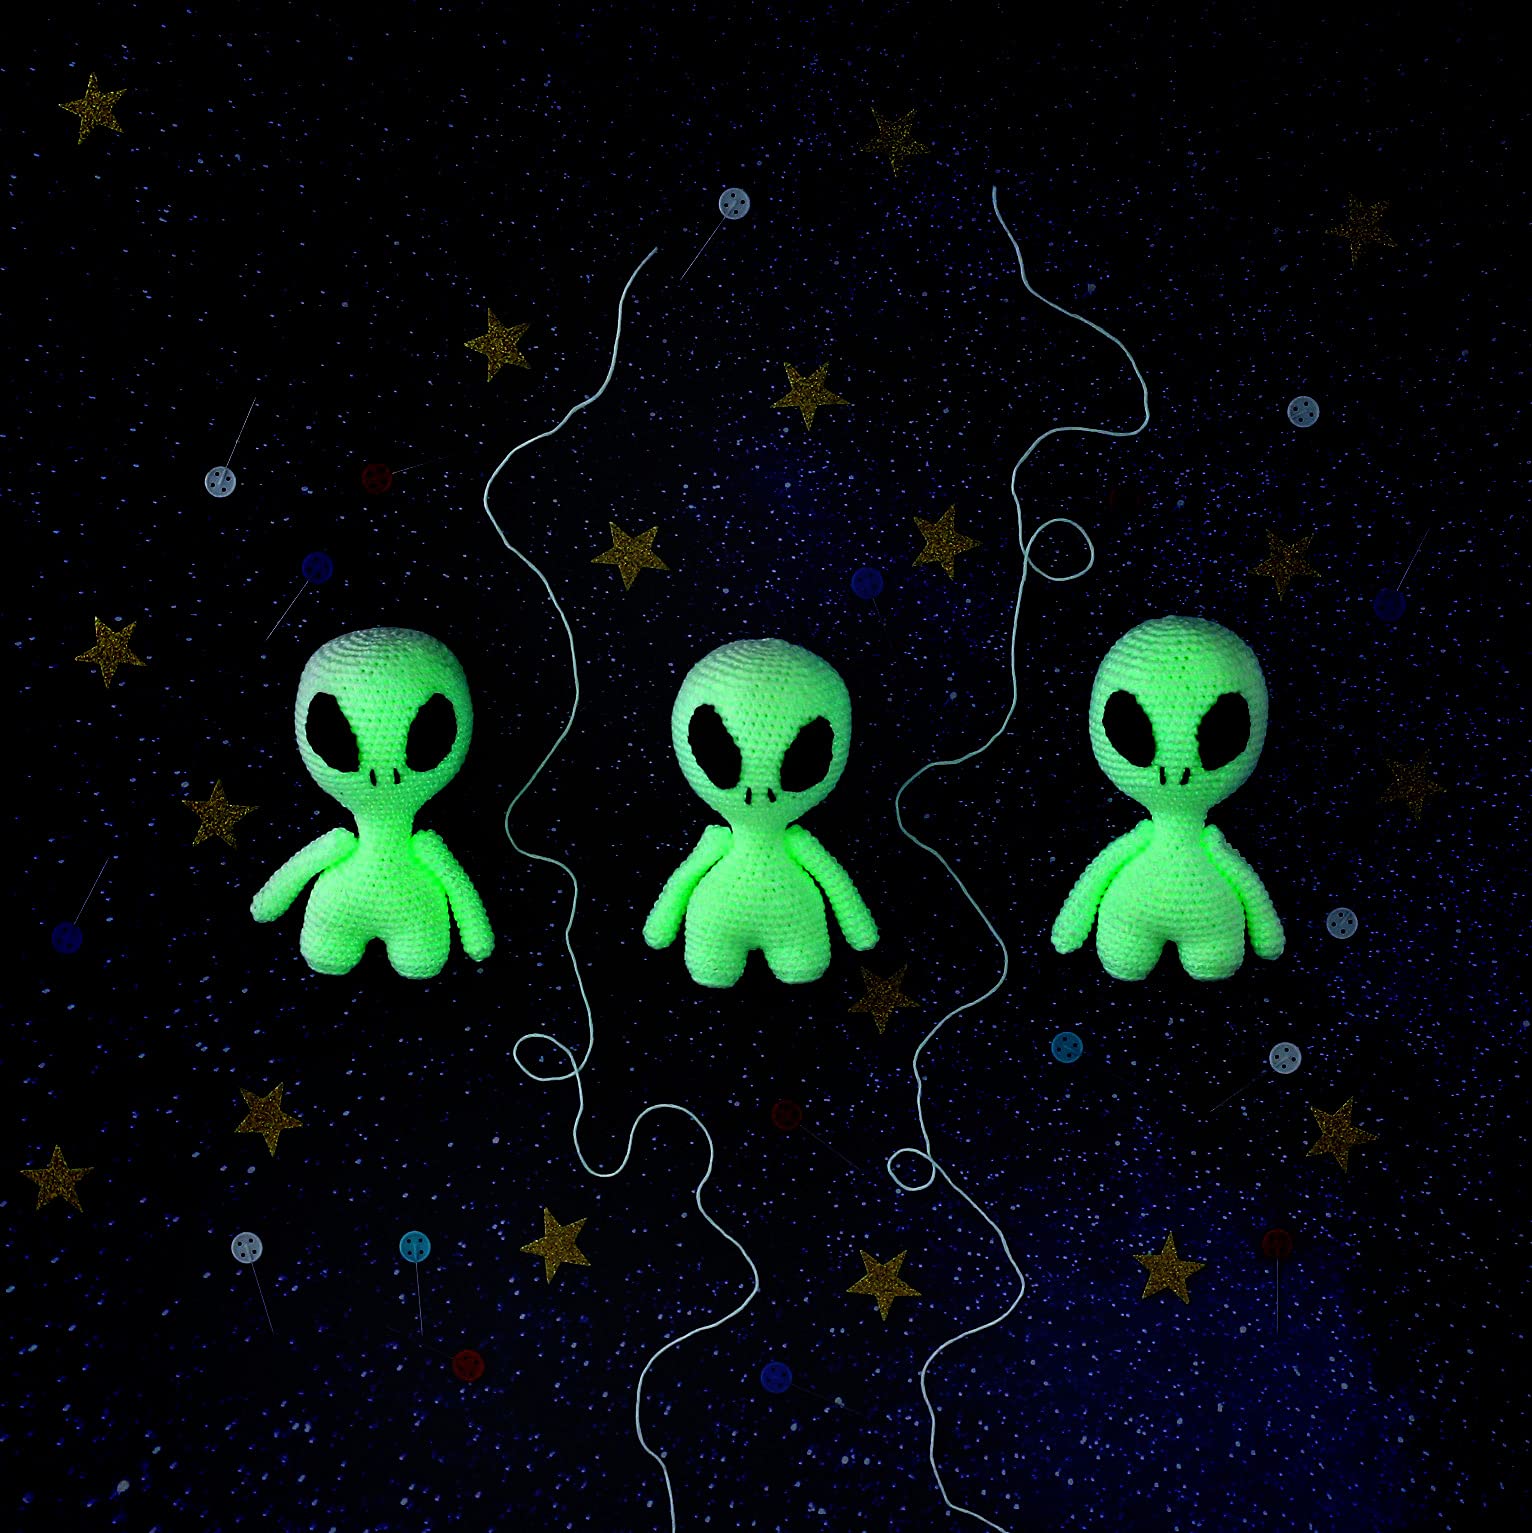 3 green crochet aliens on a starry background - Alien